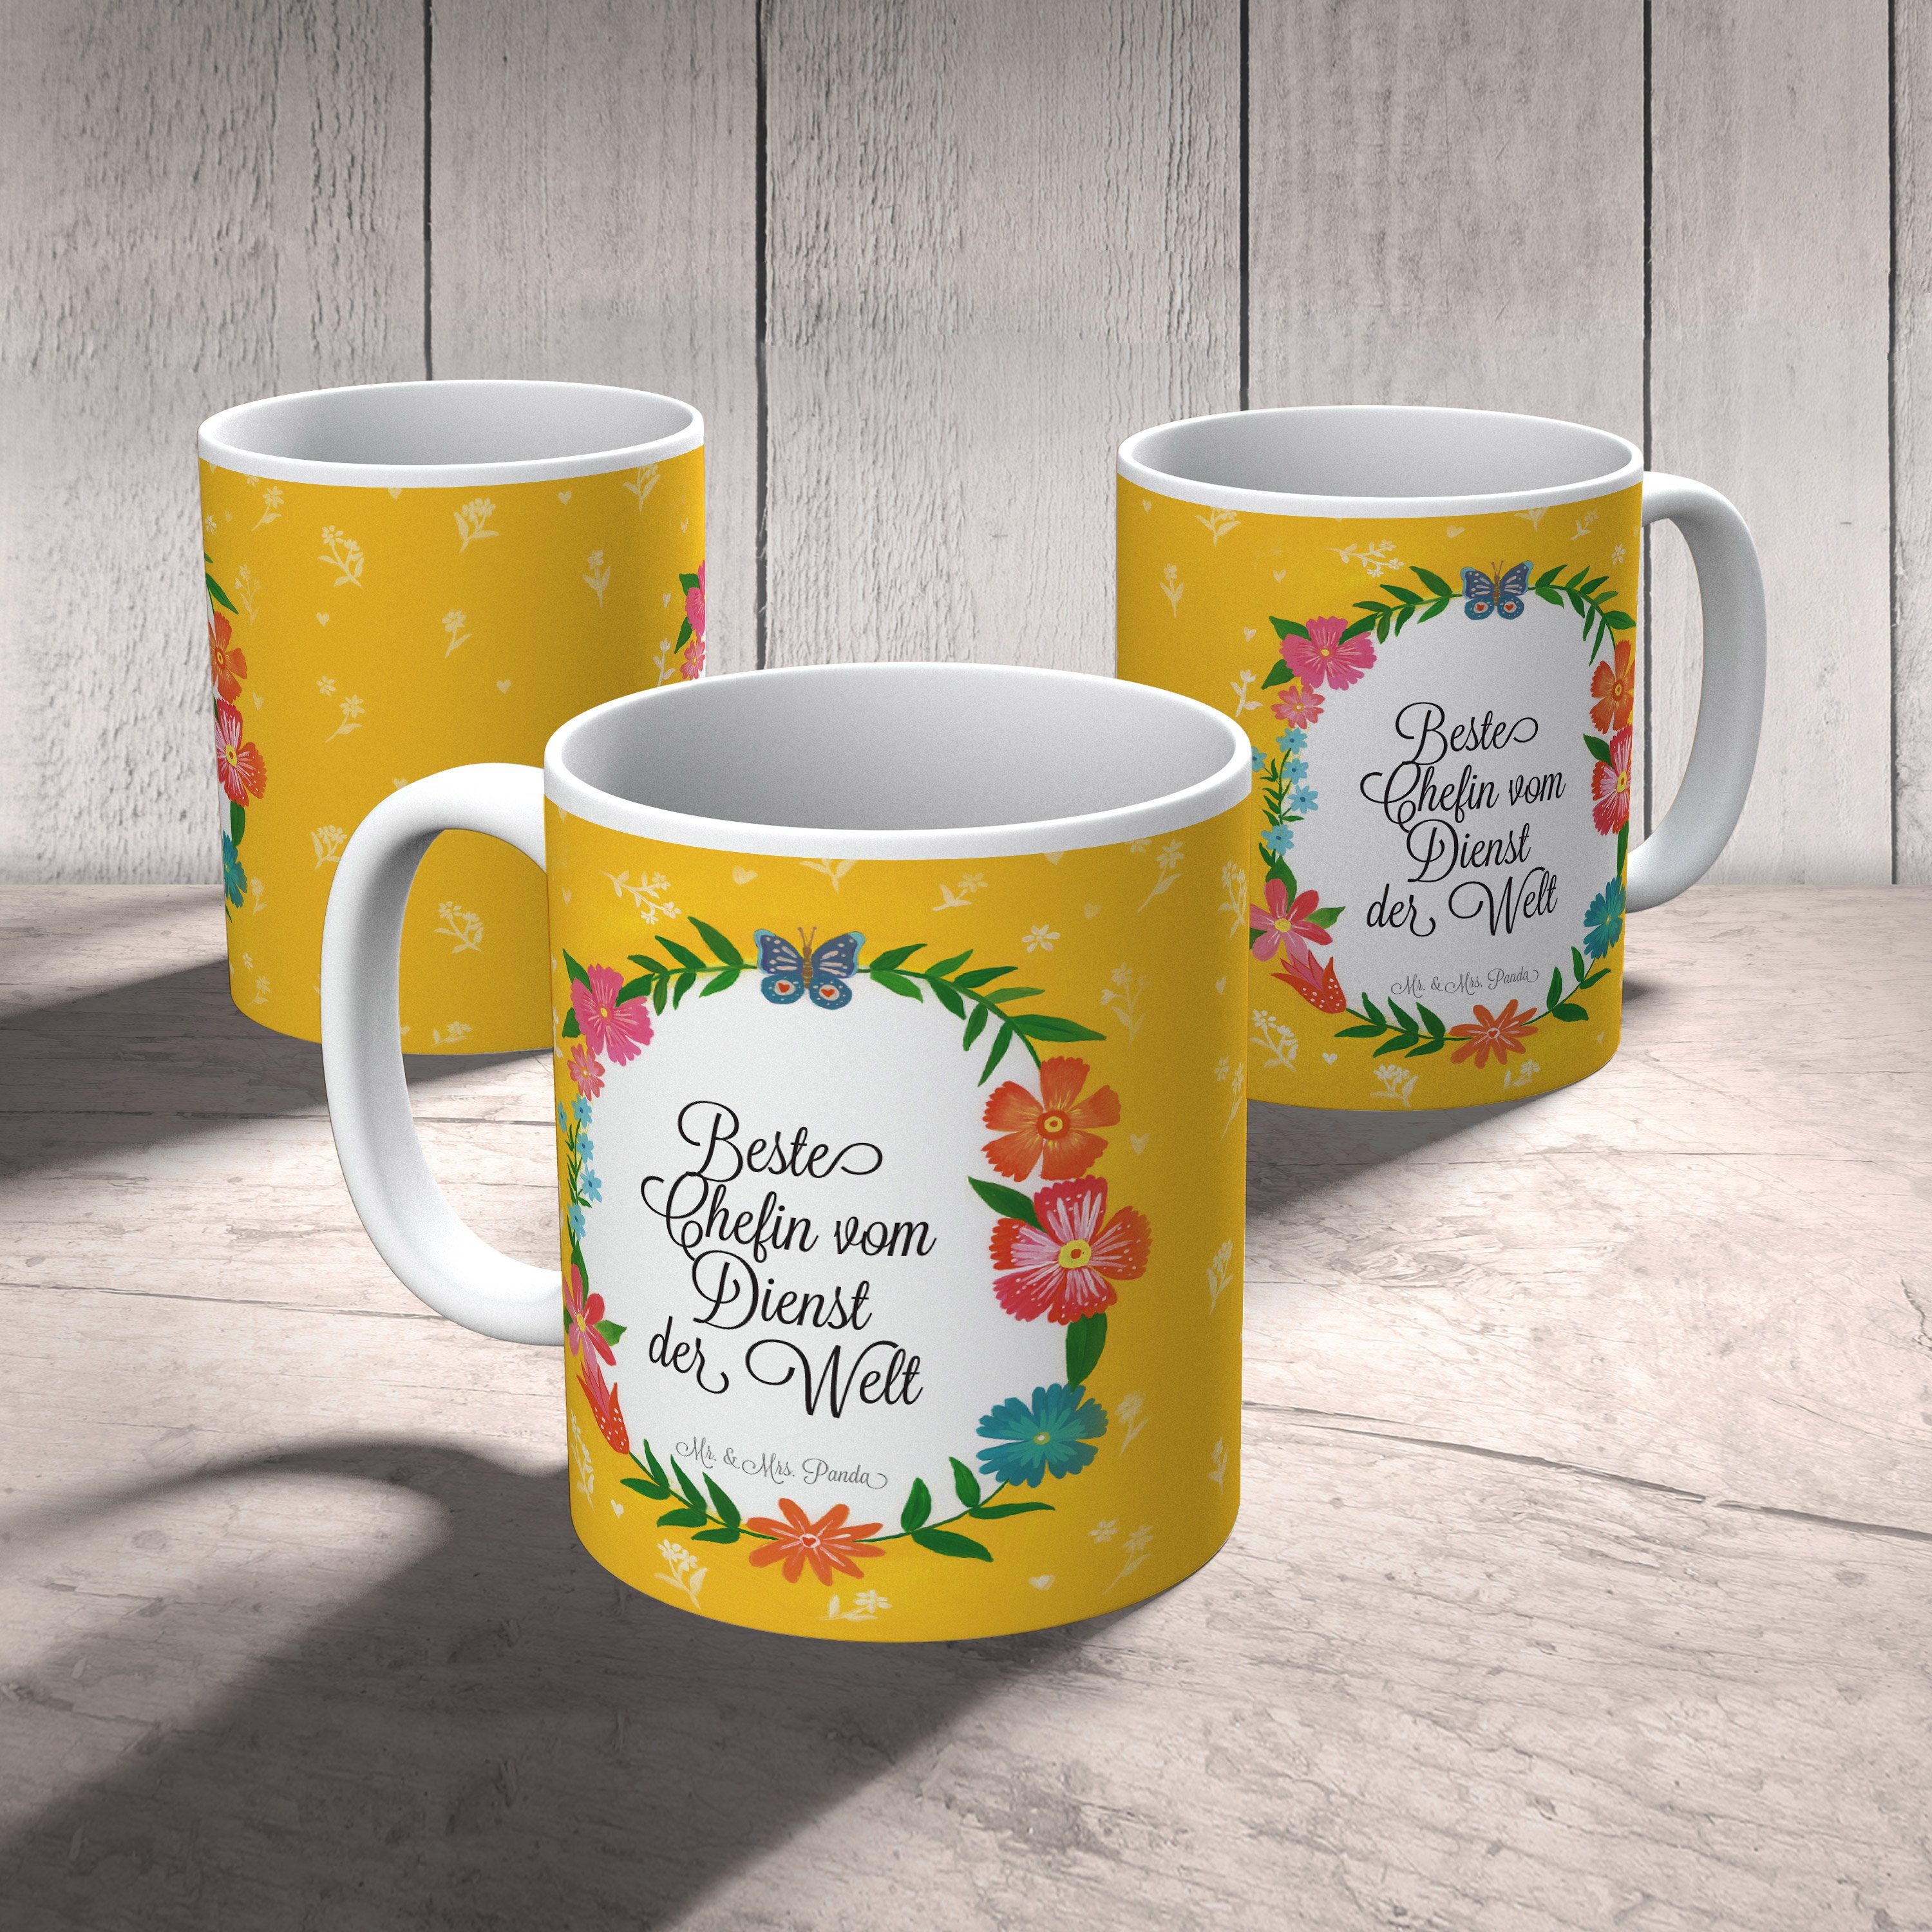 Mr. & Mrs. Panda Kaffeebecher, Berufsschule, Dienst Tasse vom Chefin Tass, Tasse, Keramik - Geschenk